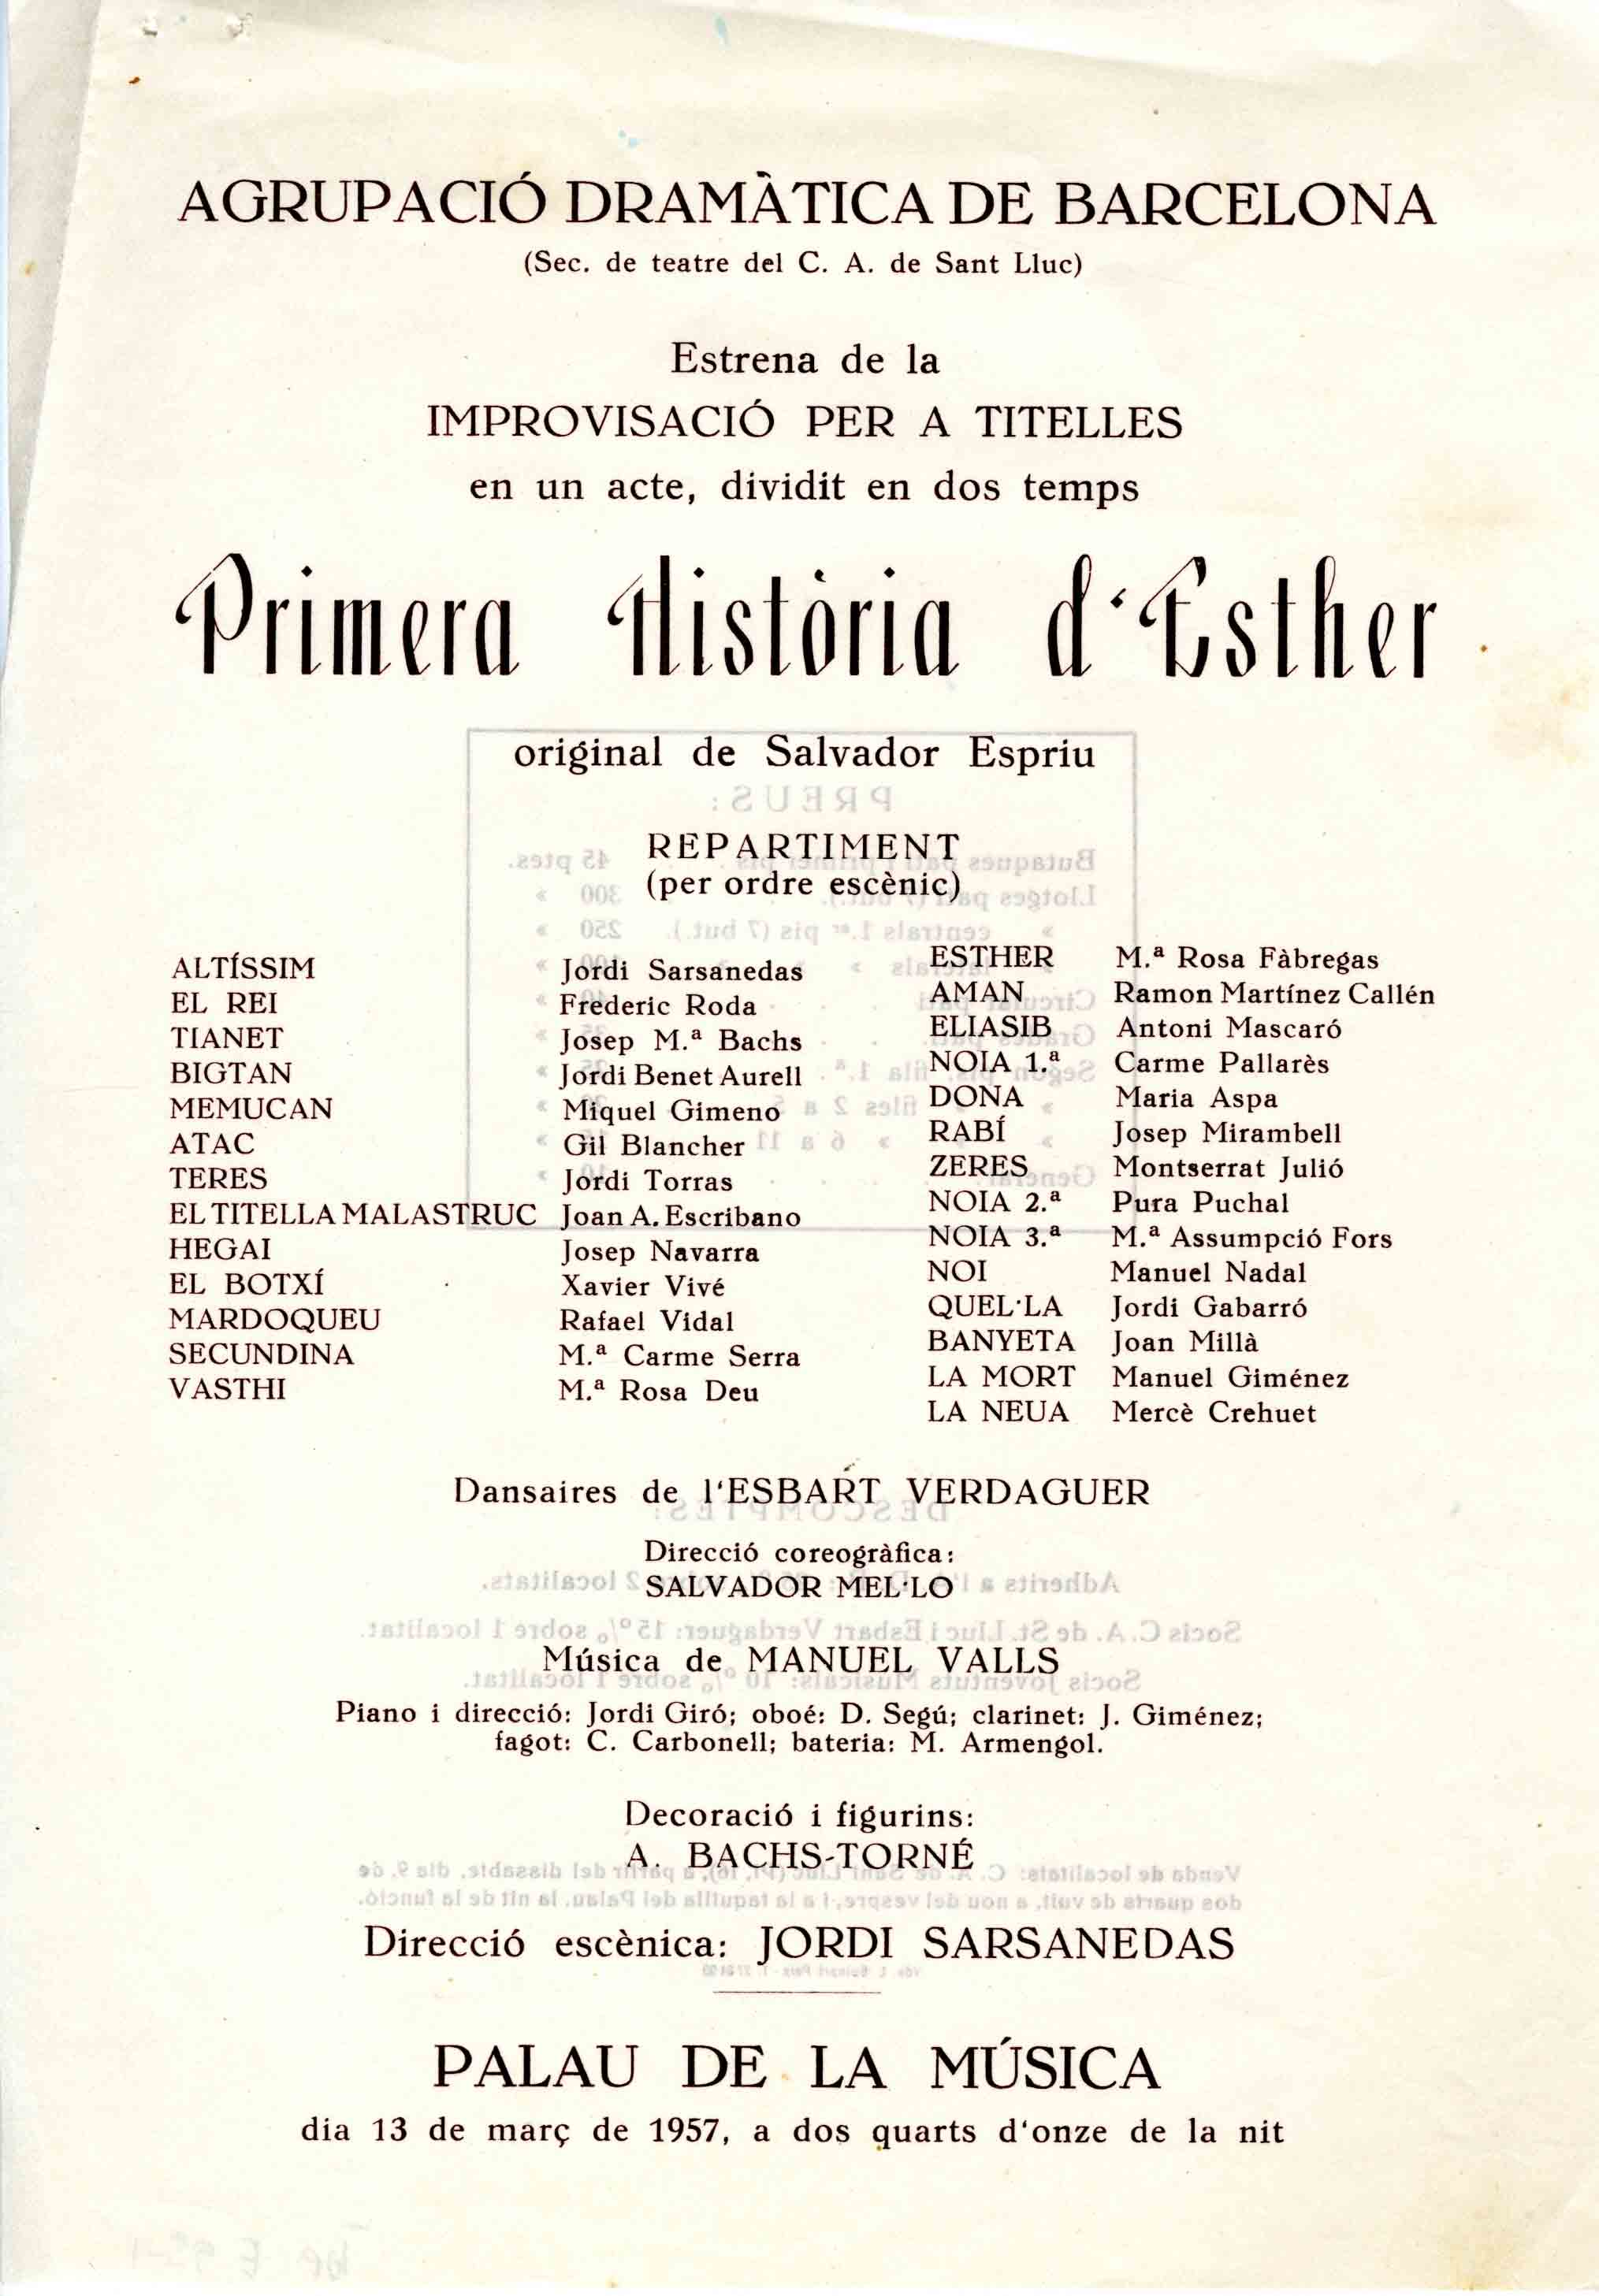 Programa. Primera història d'Esther. ADB. Palau de la Música. 1957